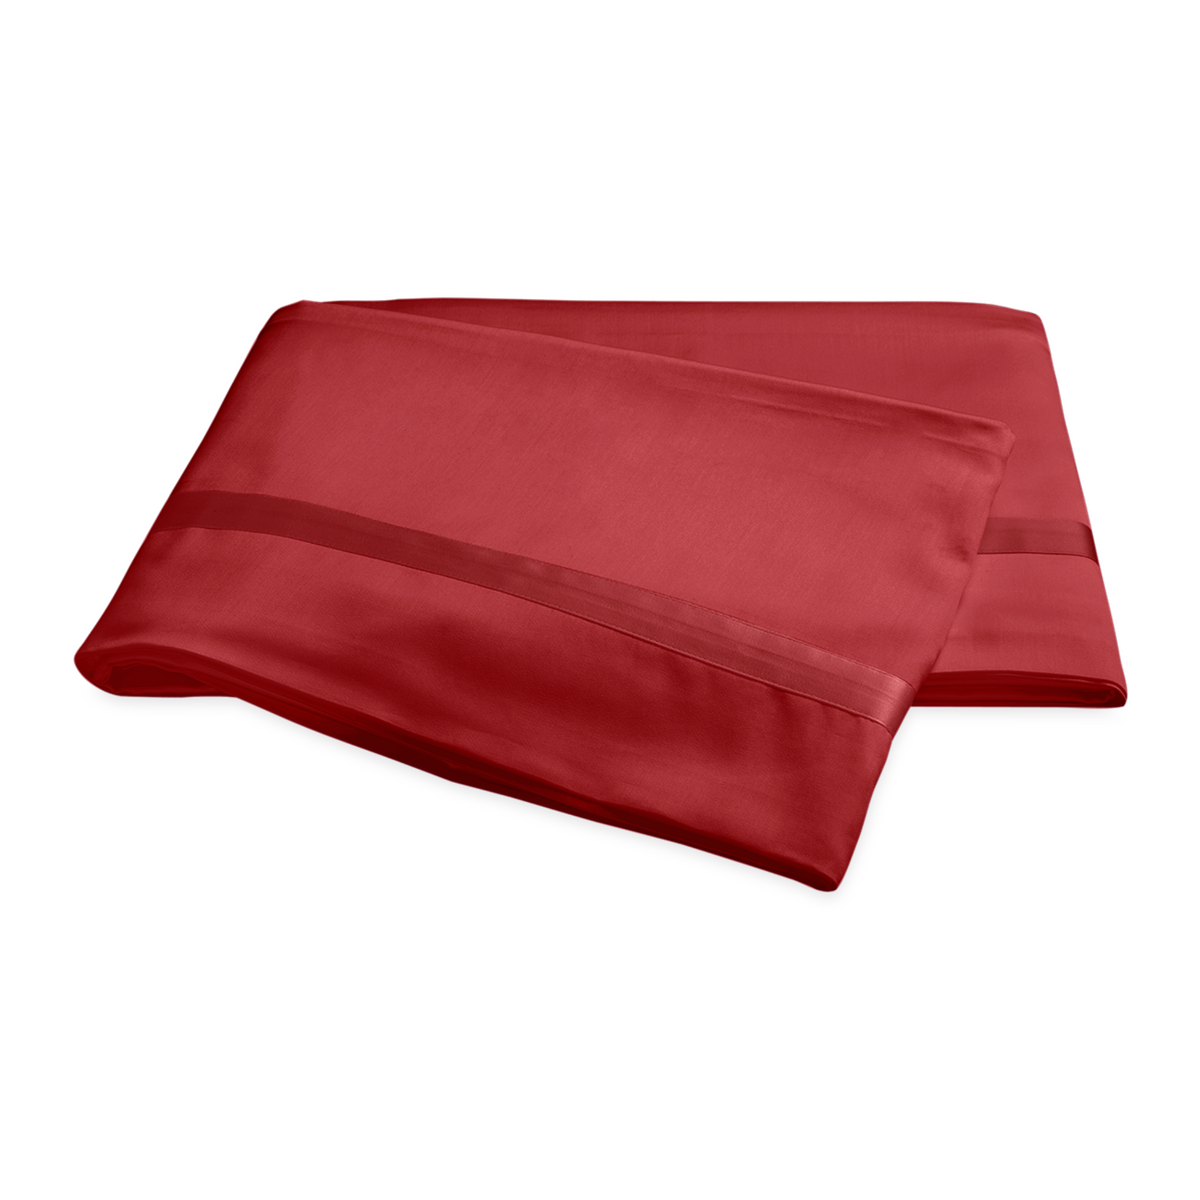 Folded Flat Sheet of Matouk Nocturne Bedding in Scarlet Color